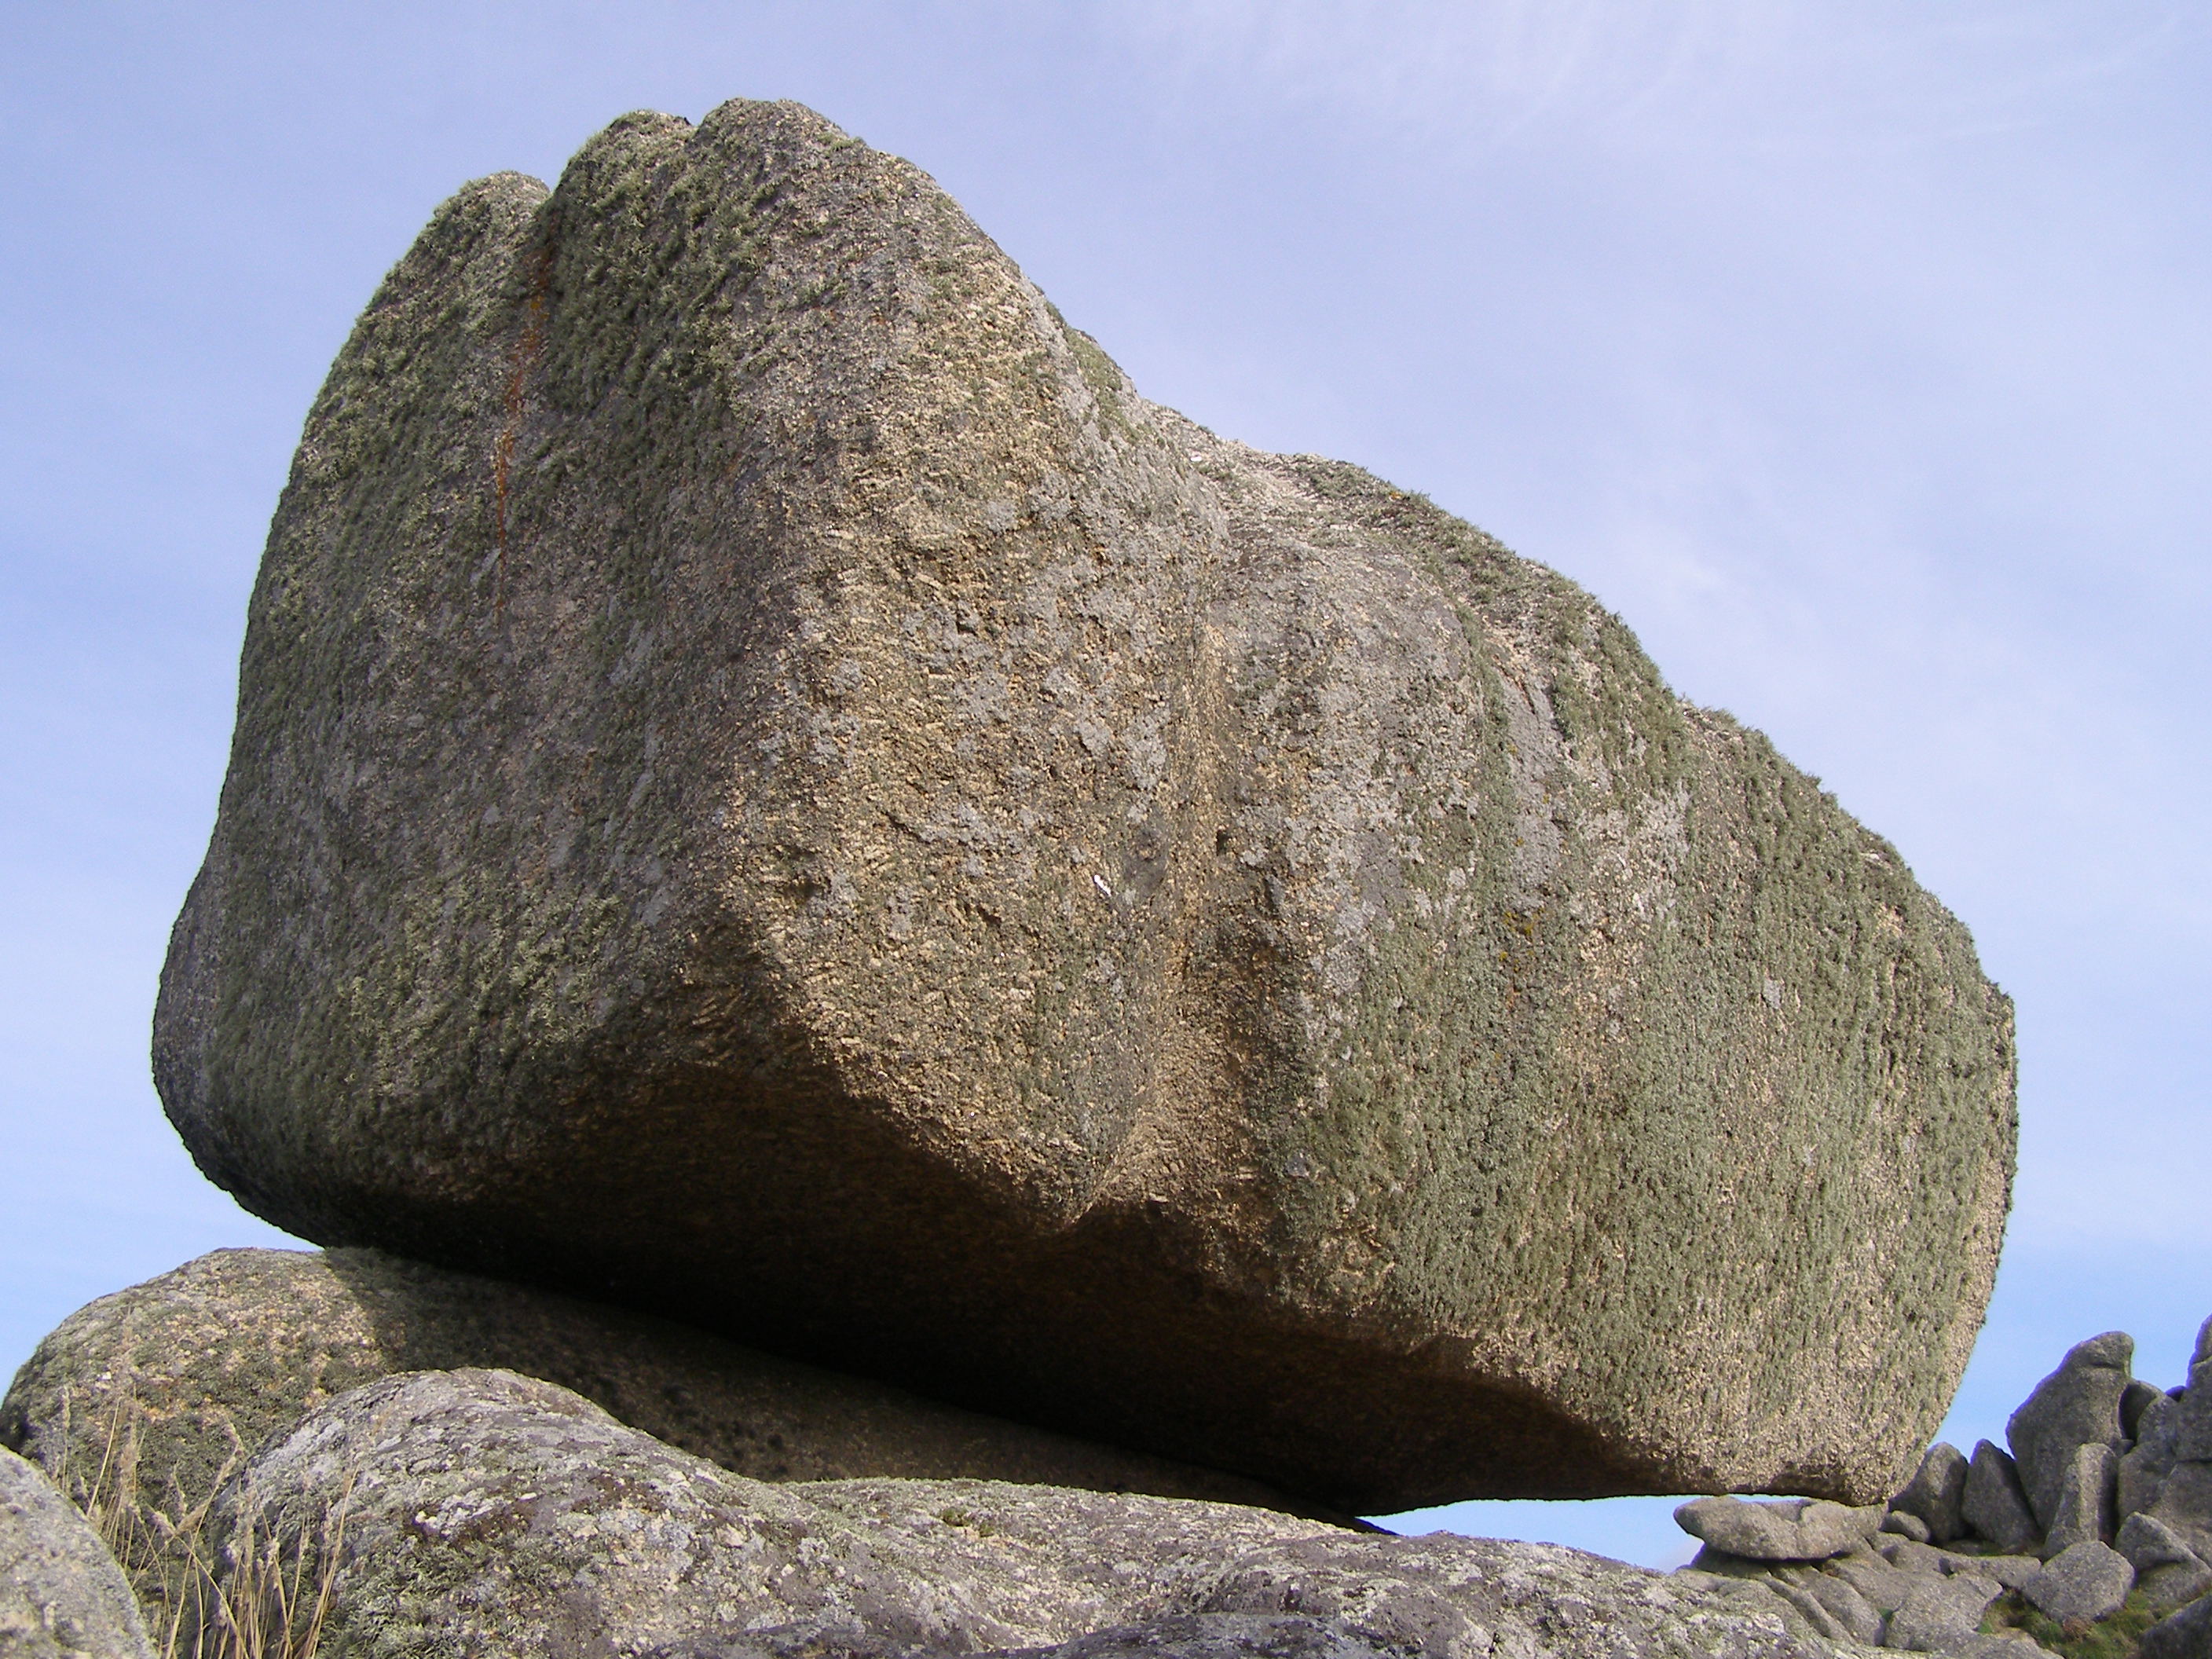 la piedra en forma de bloque de granito a la intemperie